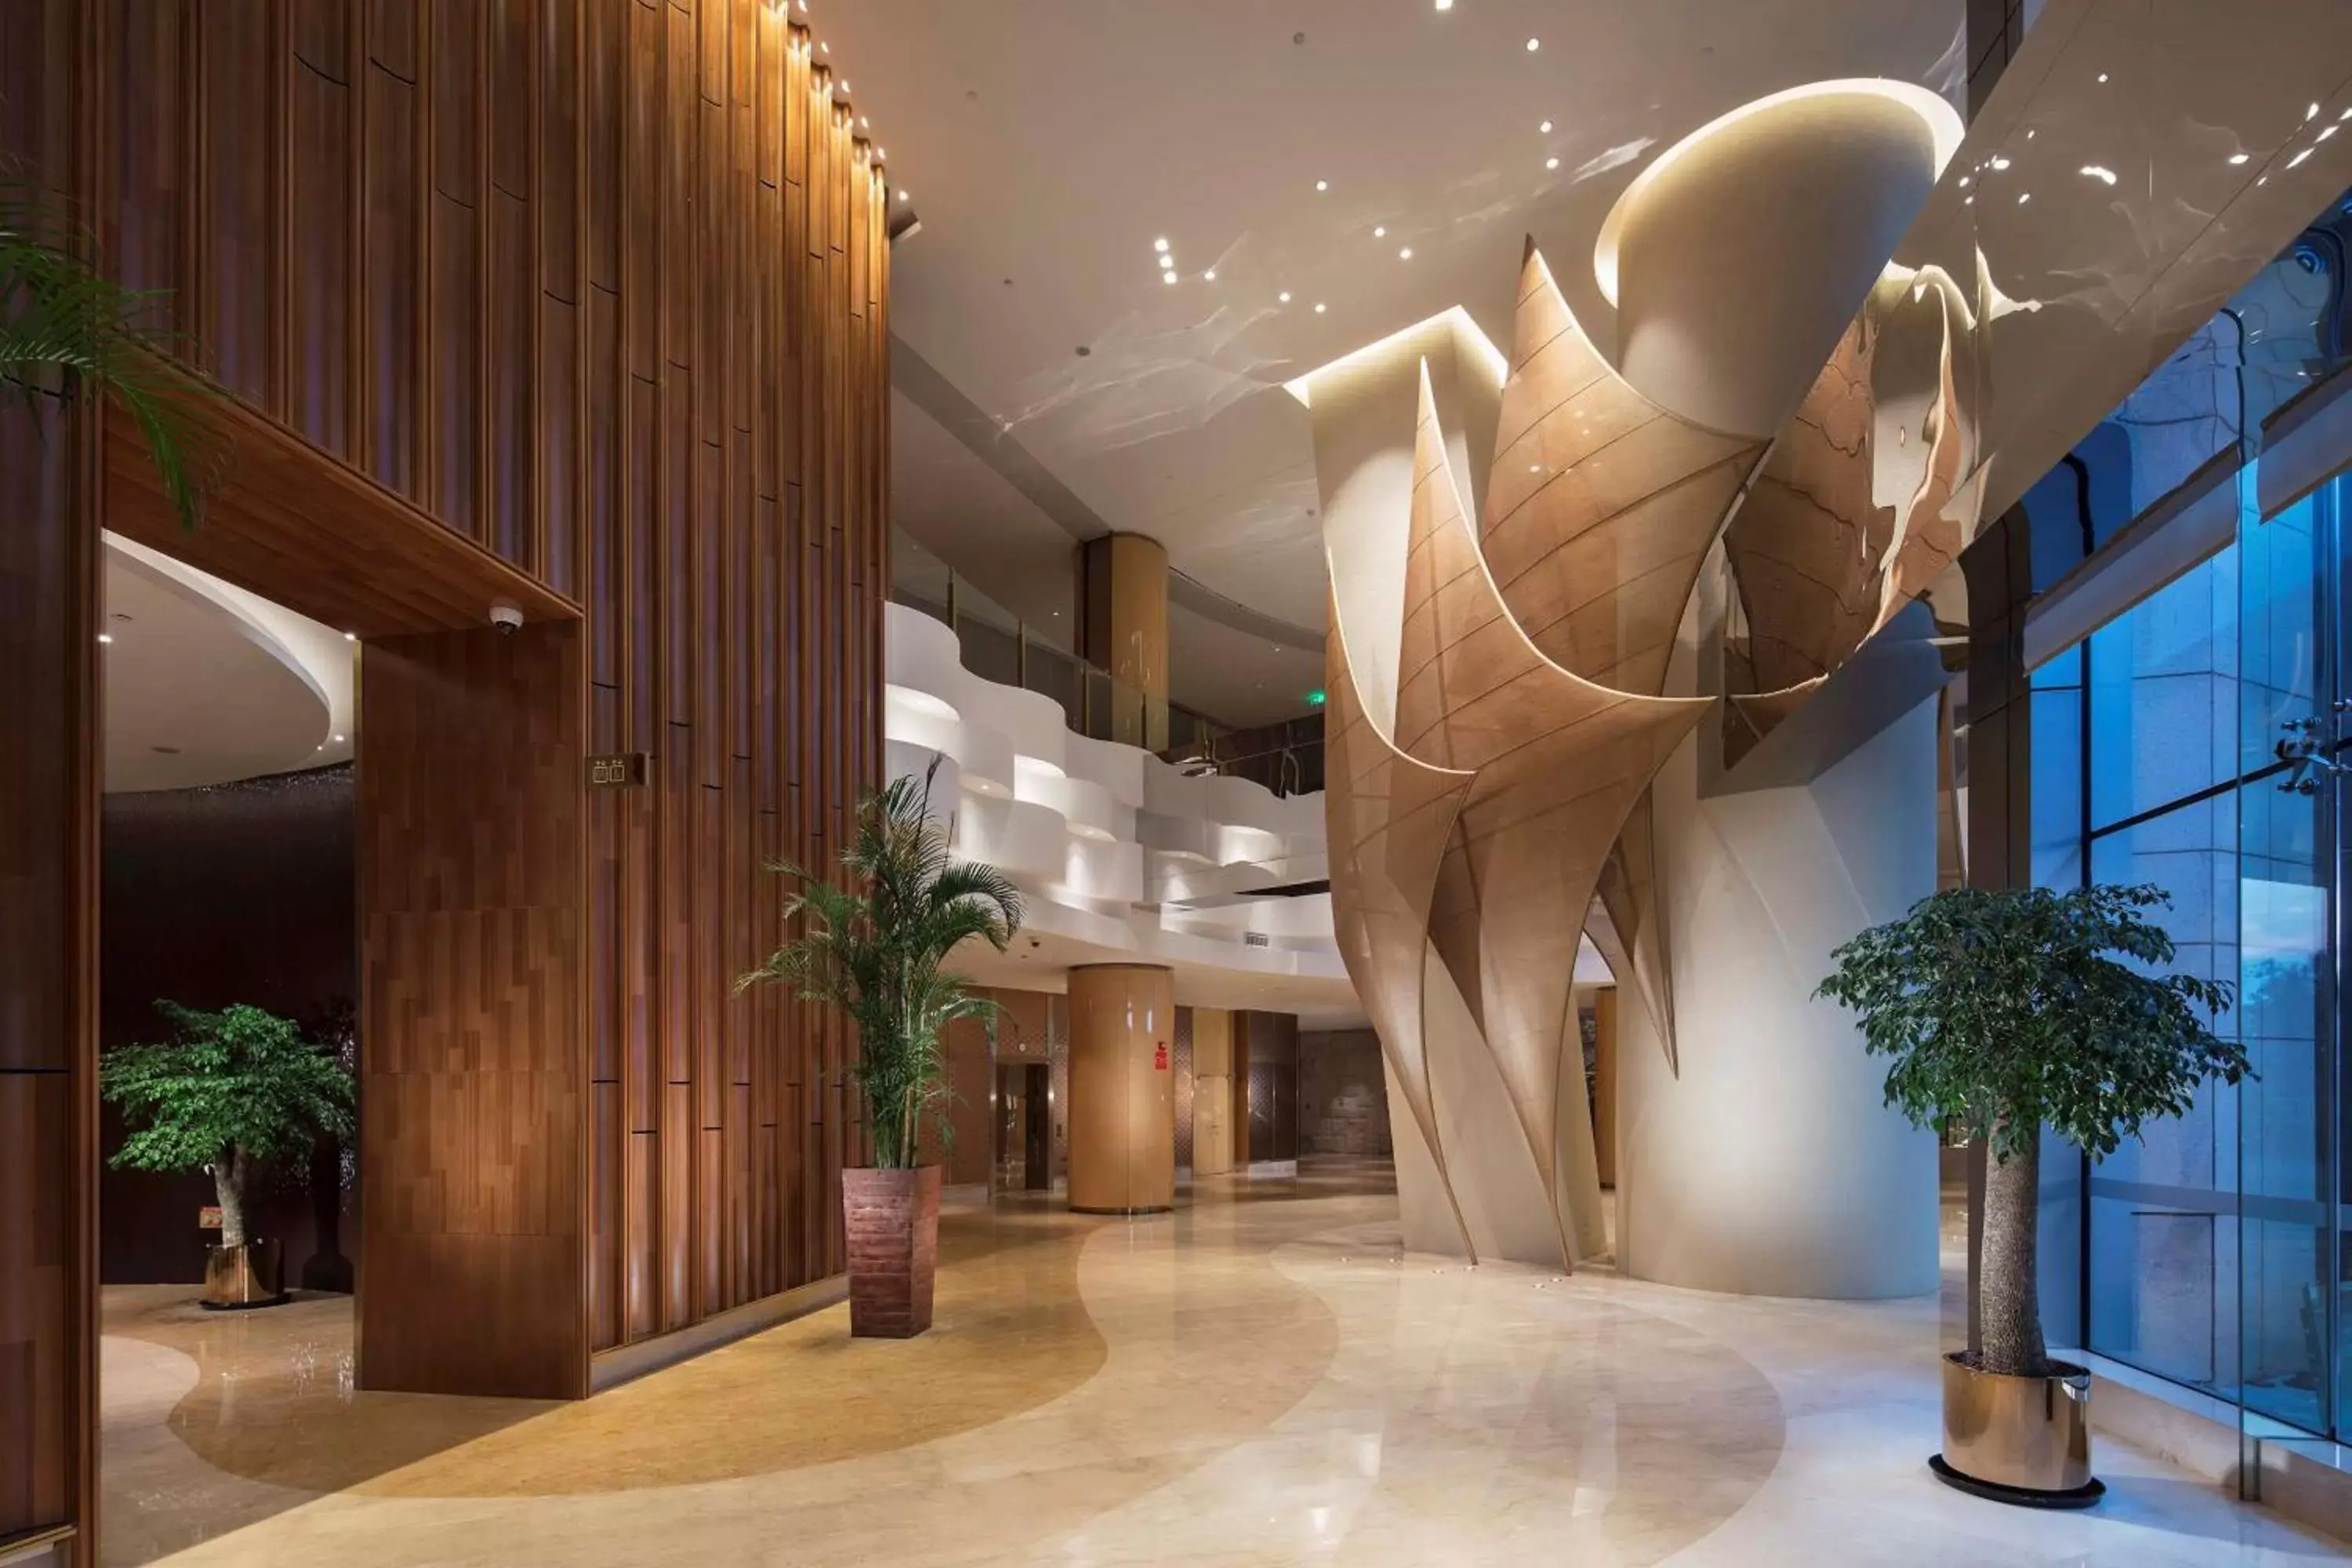 Lobby or reception, Lobby/Reception in Hilton Yantai